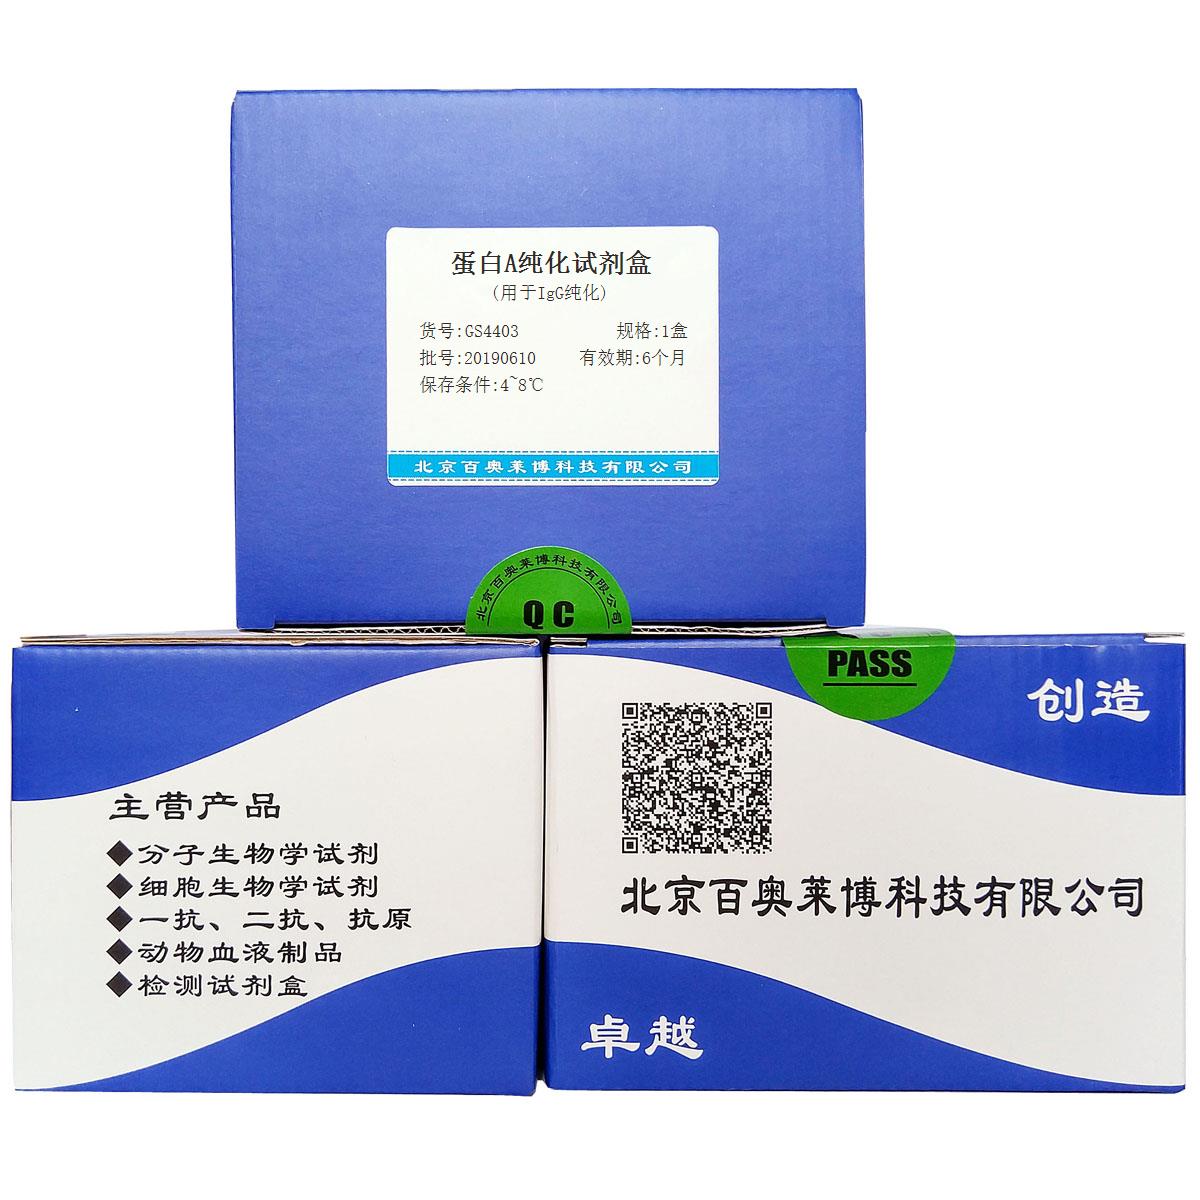 蛋白A纯化试剂盒(用于IgG纯化)北京品牌